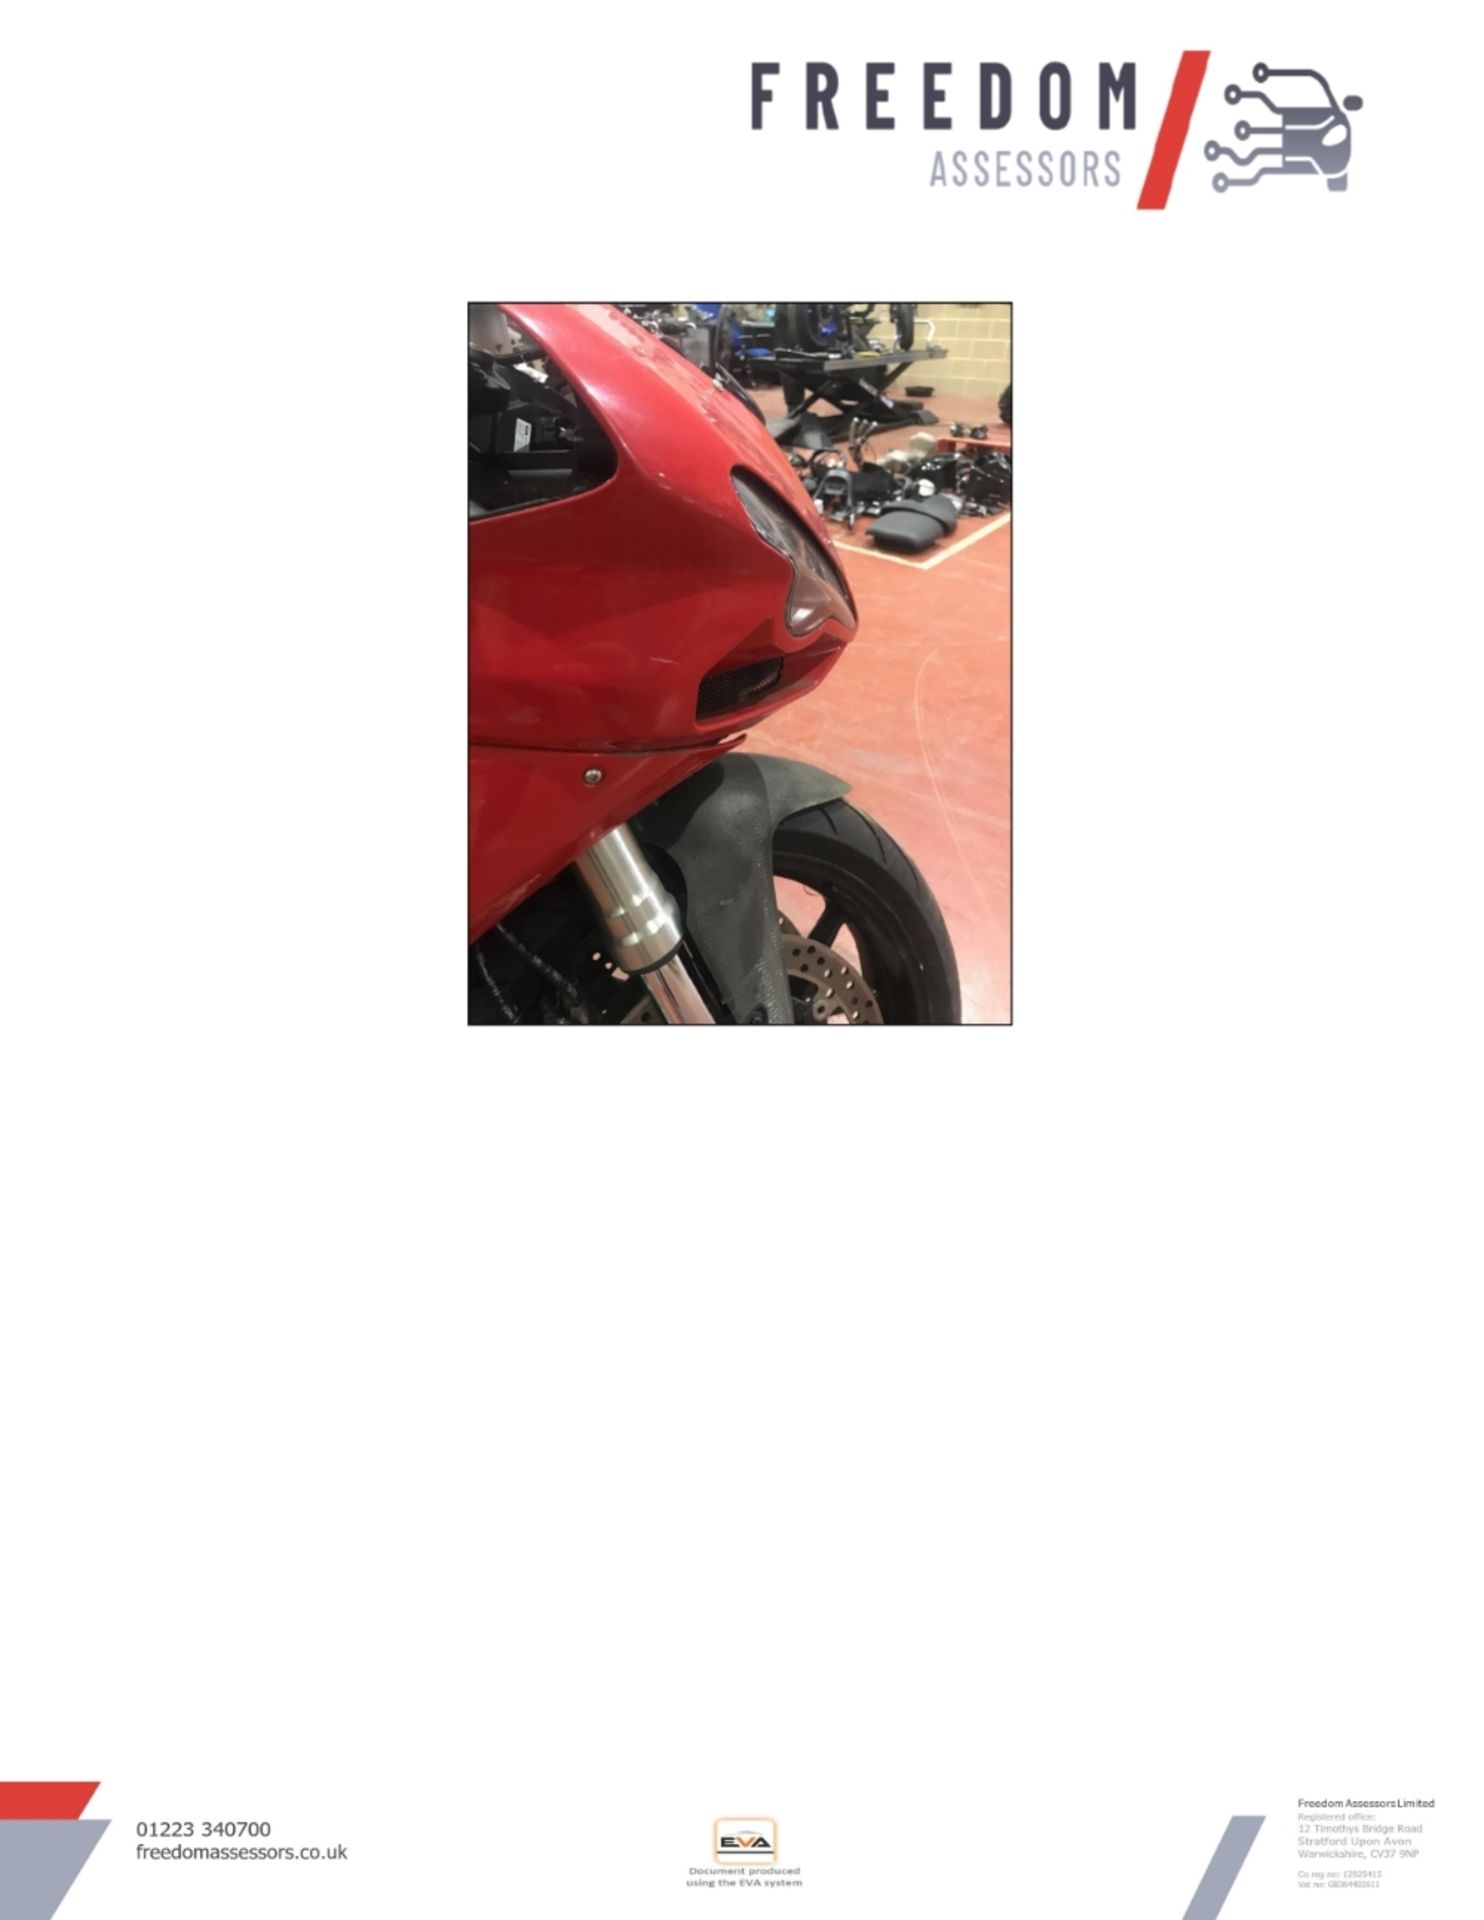 GX10 KTE Ducati 848 Motorcycle - Image 34 of 36